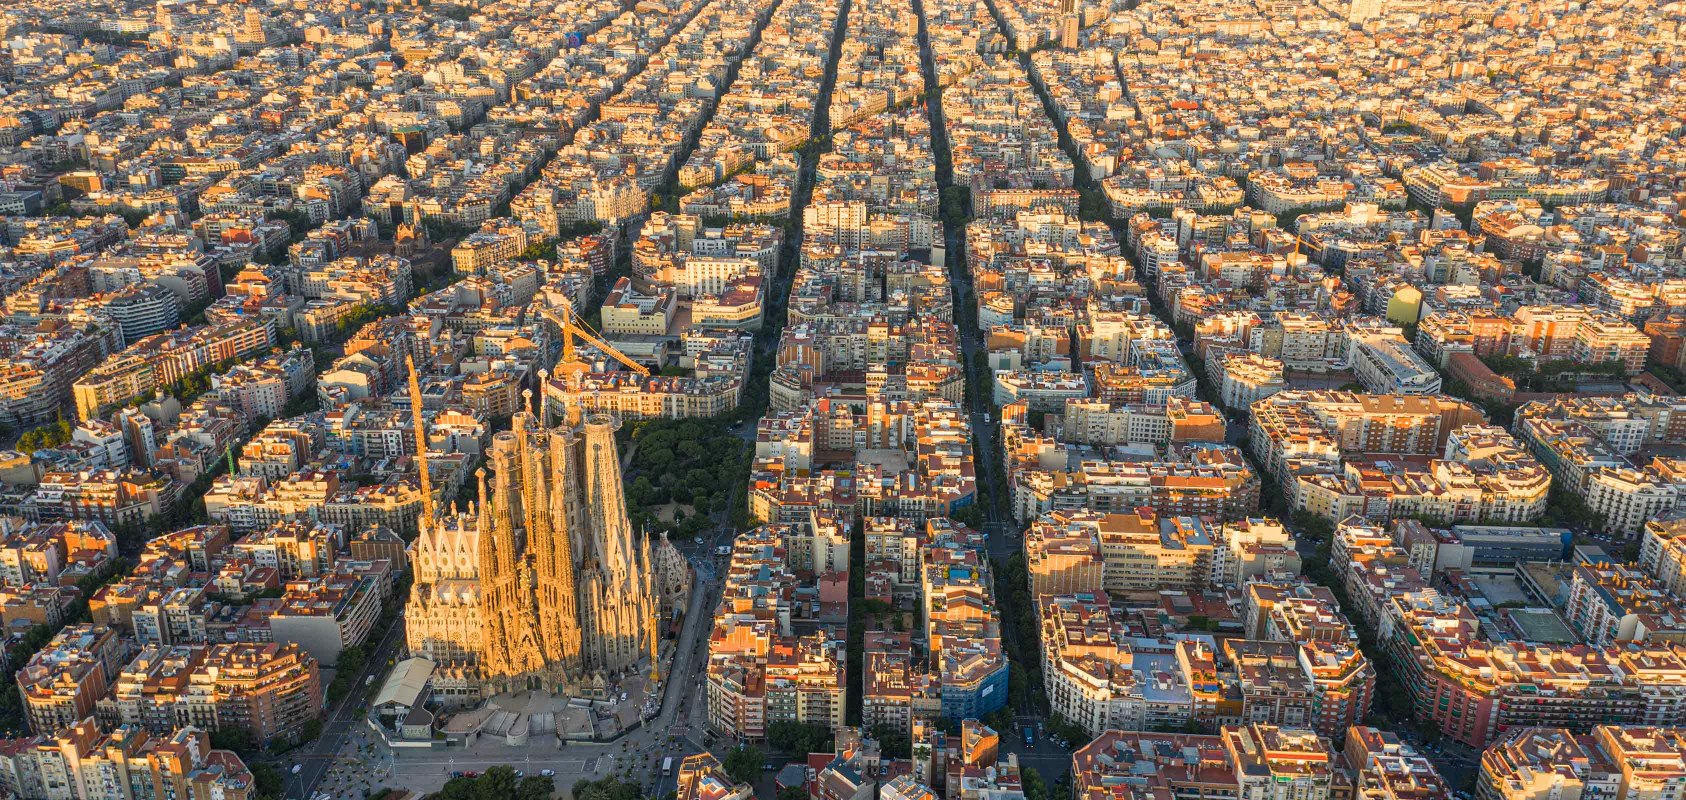 Vista dall’alto della città di Barcellona con il quartiere Eixample e la cattedrale della Sagrada Familia al centro - SEAT Una vita ricca di creatività